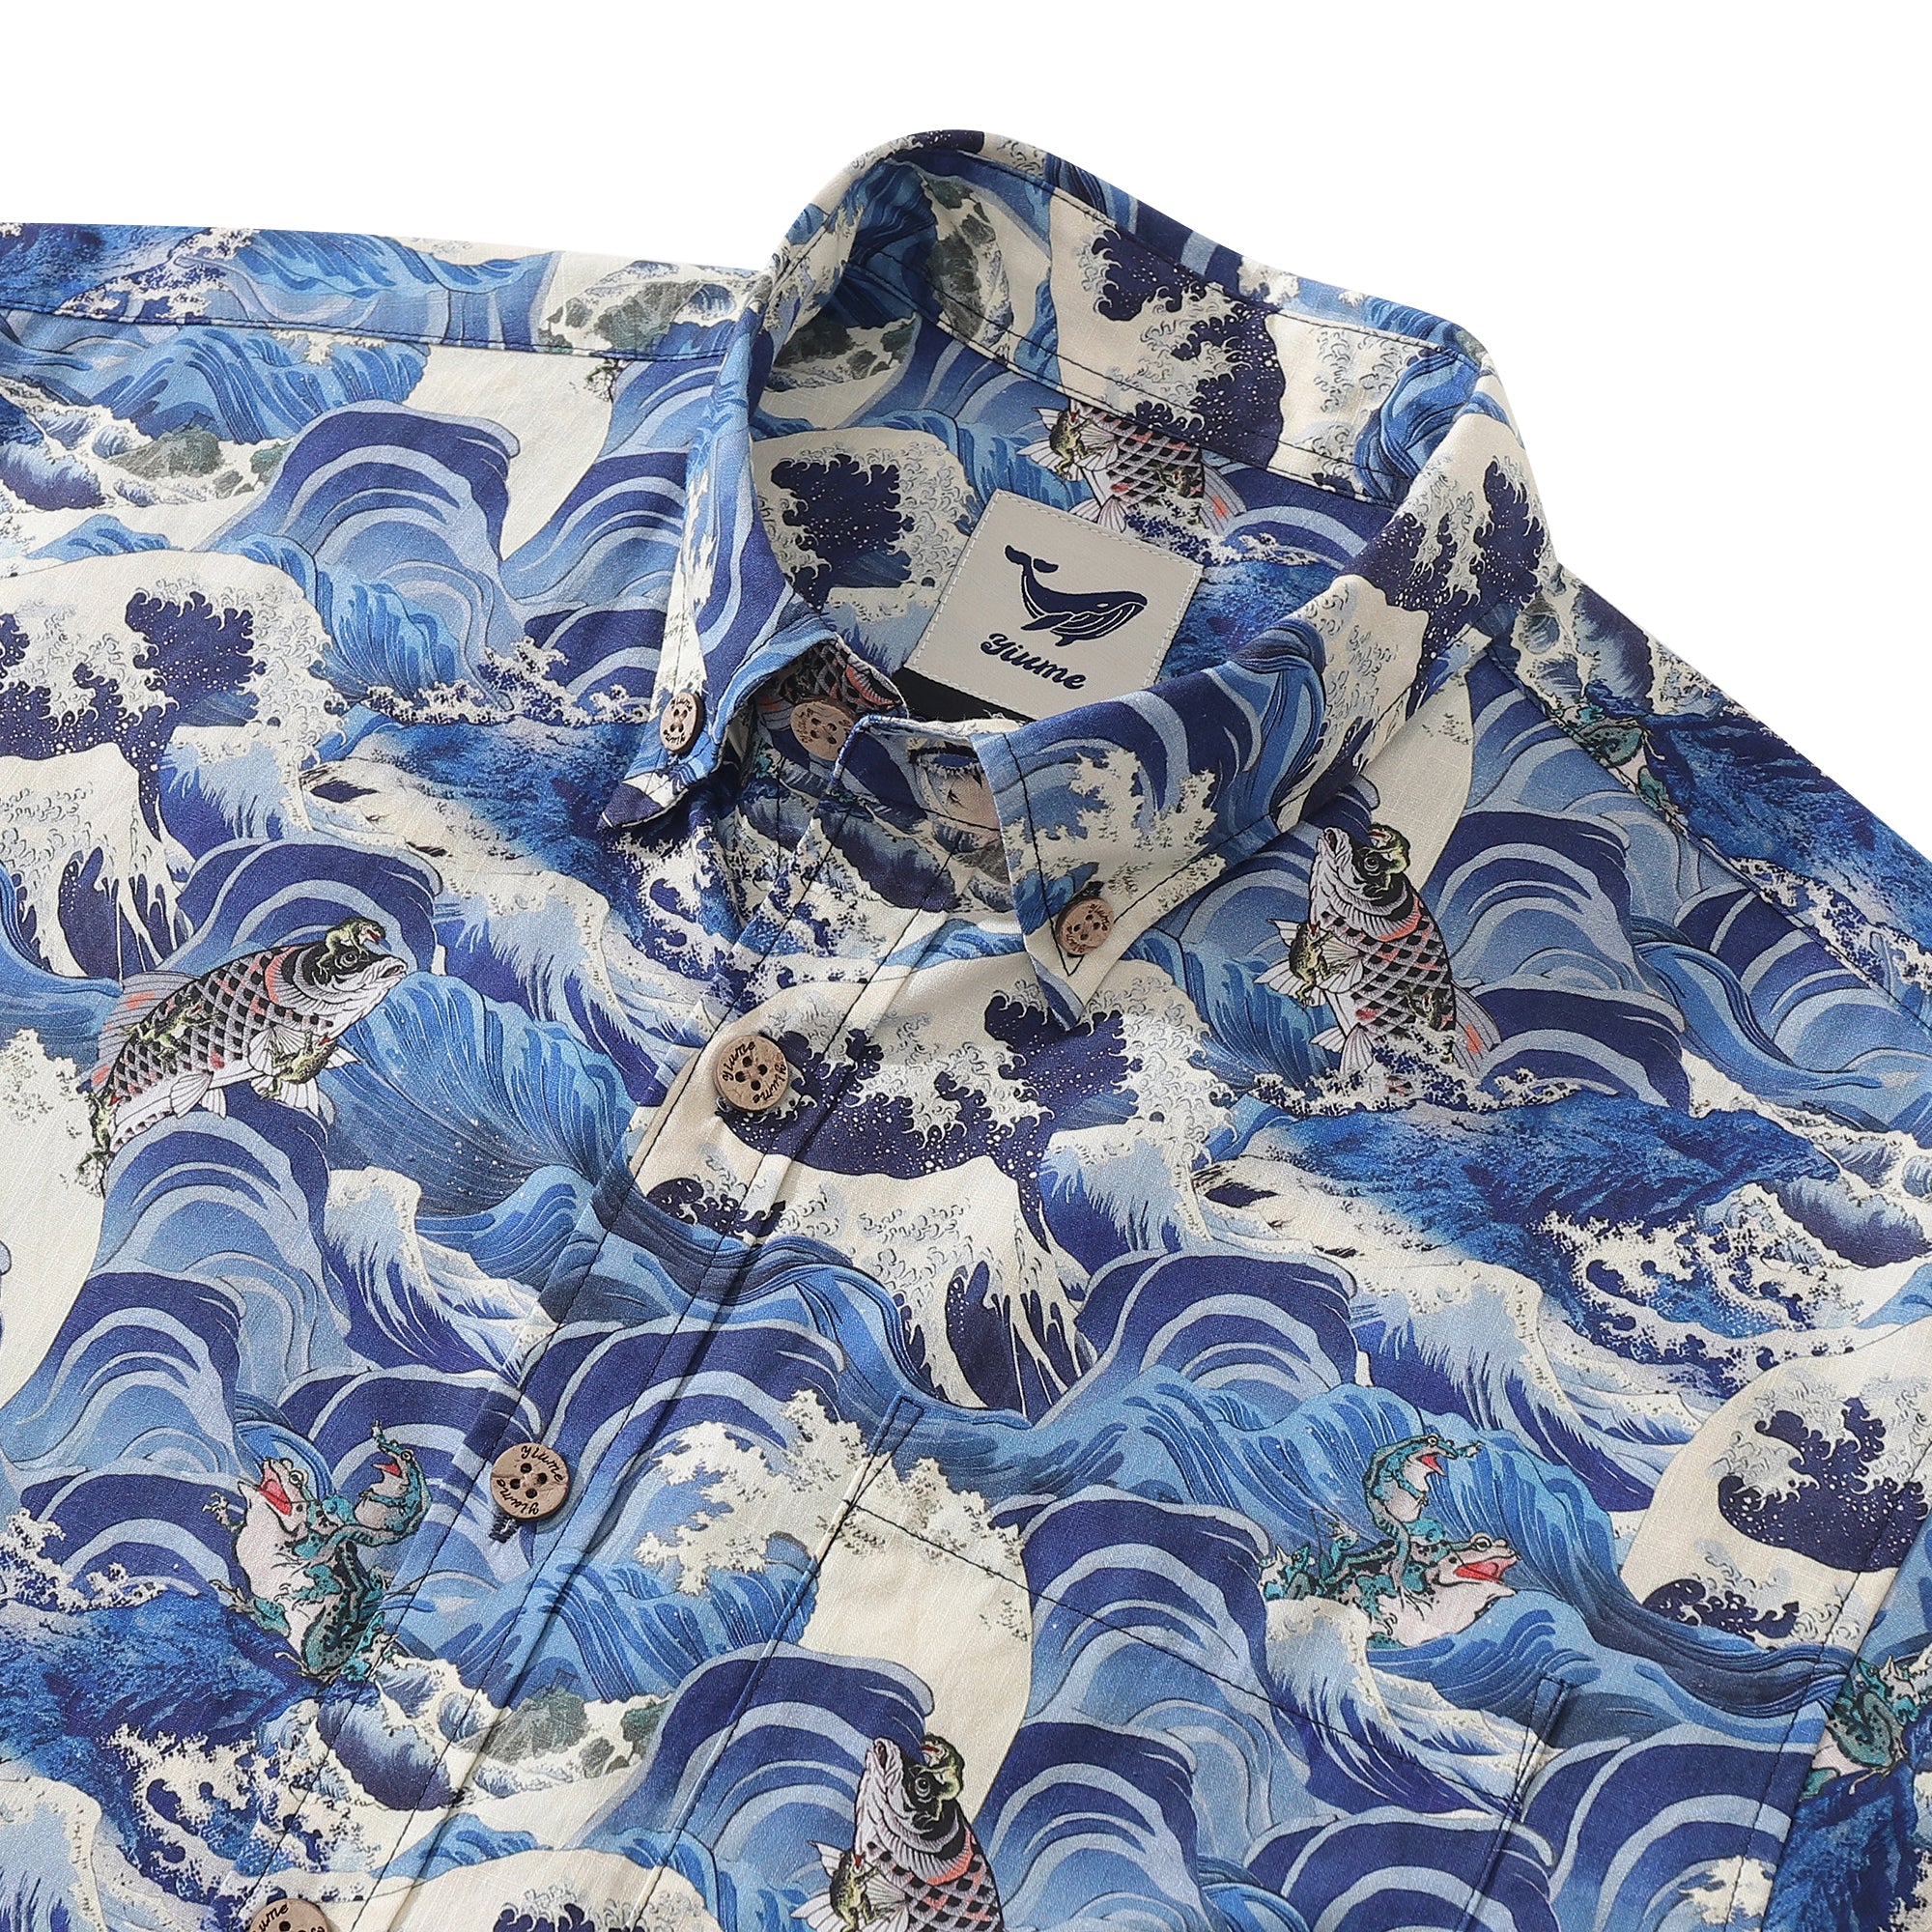 Men's Hawaiian Shirt Lucky Embrace Print Cotton Button-down Short Slee ...